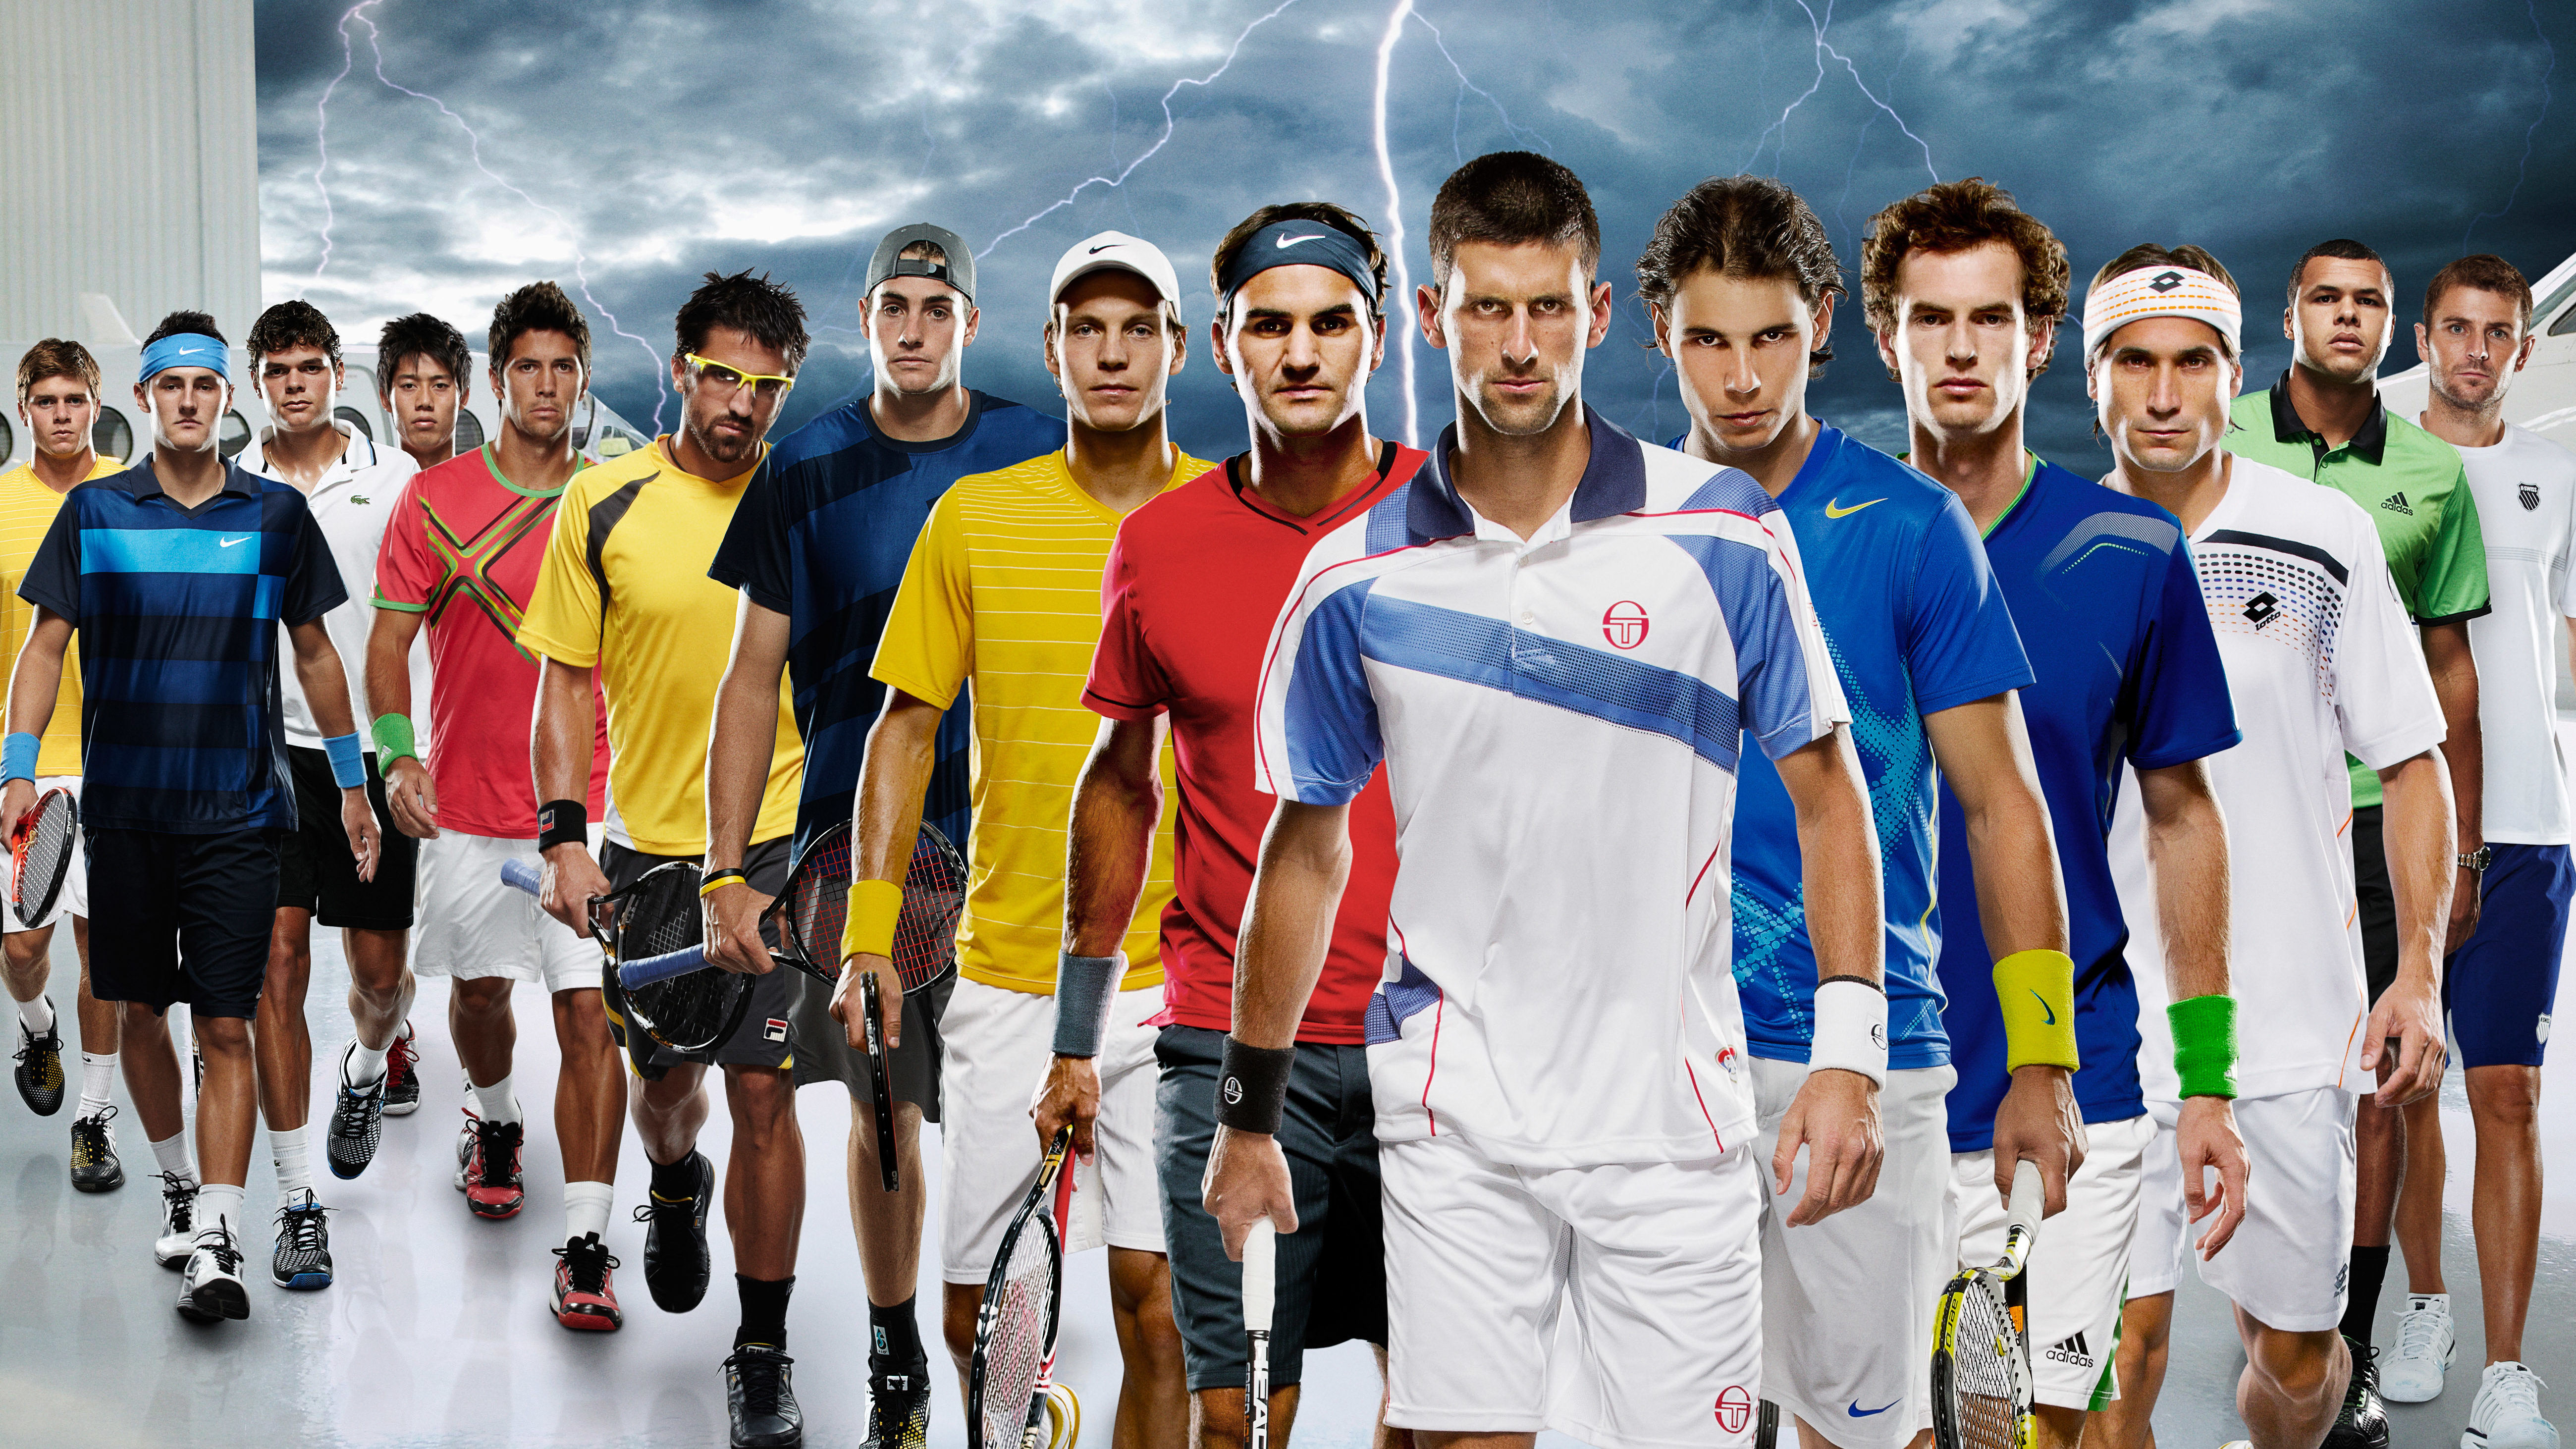 Maak avondeten Zelfgenoegzaamheid verzending Highest-paid Tennis Players of All Time (Men's Singles)